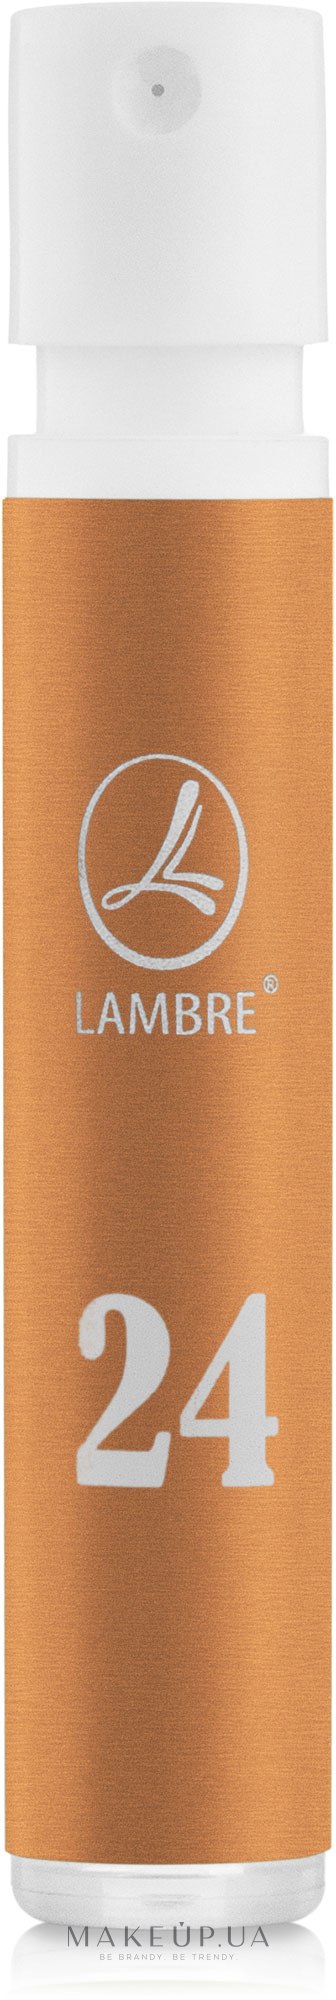 Lambre 24 - Парфуми (пробник) — фото 1.2ml